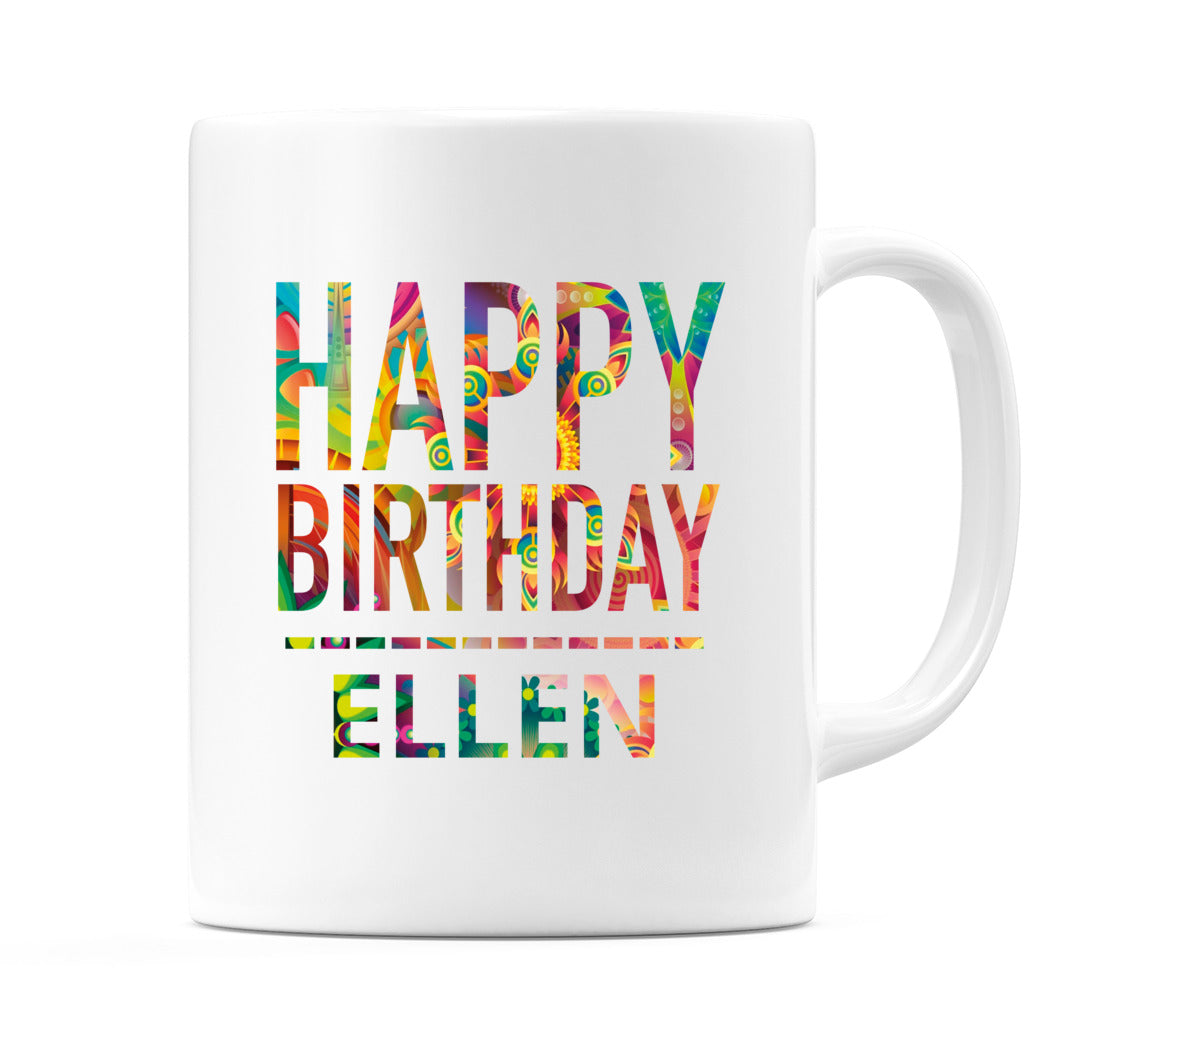 Happy Birthday Ellen (Tie Dye Effect) Mug Cup by WeDoMugs